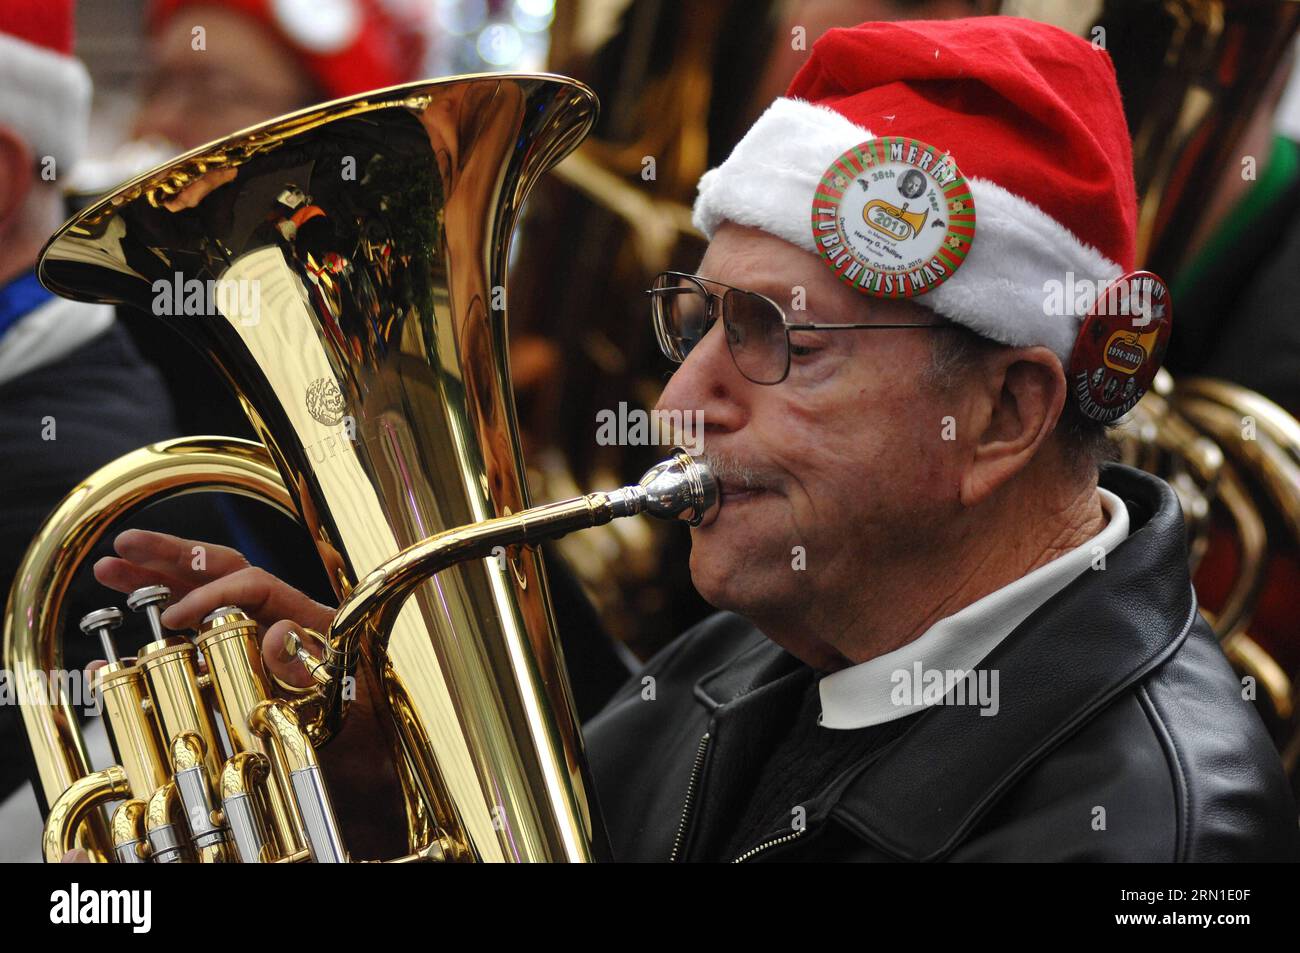 Ein Tuba-Spieler spielt Weihnachtslieder und Lieder während der 41. Jährlichen Tuba Christmas 2014-Veranstaltung neben der Robson Square Eislaufbahn in Vancouver, Kanada, am 21. Dezember 2014. Diese ungewöhnliche Weihnachtstradition hat sich in über 200 Städten auf der ganzen Welt etabliert. Die erste Tuba-Weihnachtsveranstaltung wurde 1974 im Rockefeller Center in New York präsentiert und wurde von Harvey Phillips zu Ehren seines Lehrers, dem verstorbenen William J. Bell, konzipiert. )(zhf) CANANDA-VANCOUVER-CHRISTMAS-TUBA SergeixBachlakov PUBLICATIONxNOTxINxCHN ein Tuba-Spieler spielt Weihnachtslieder und Lieder während der 41. Jährlichen Tuba Stockfoto